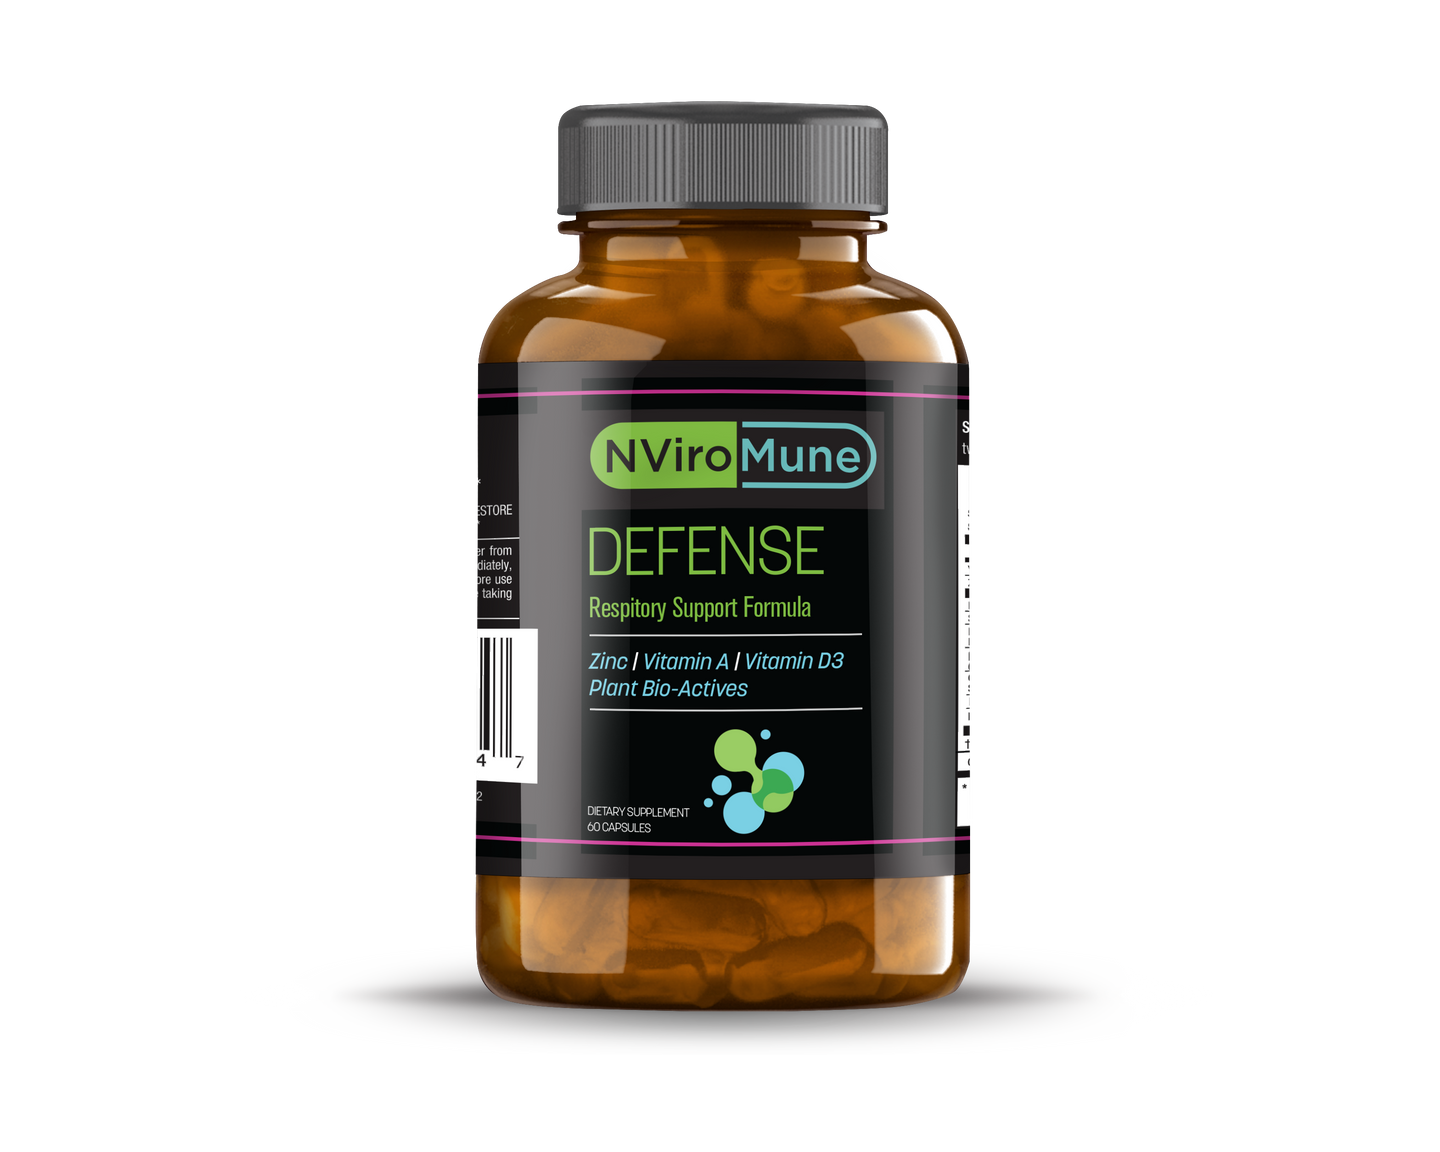 NViroMune – Defense 60ct bottle